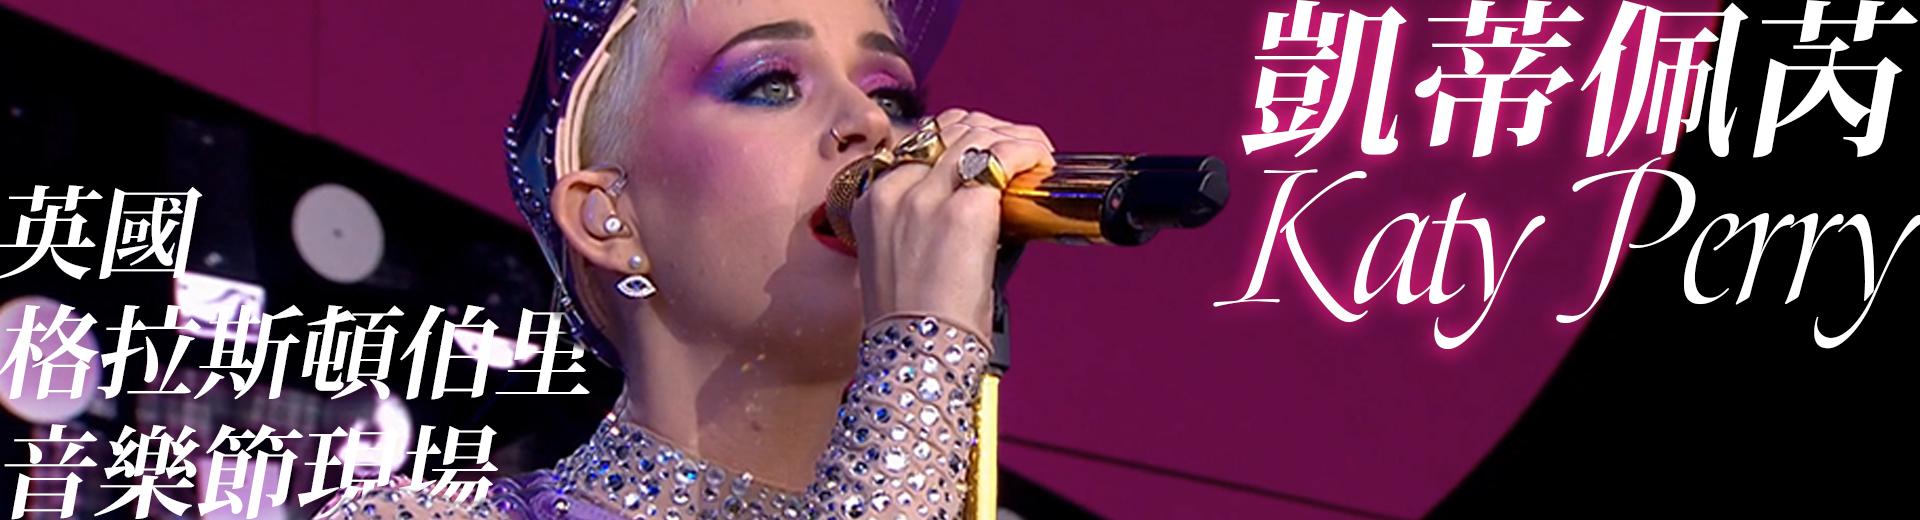 凱蒂佩芮—英國格拉斯頓伯里音樂節現場 Katy Perry - Live at Glastonbury